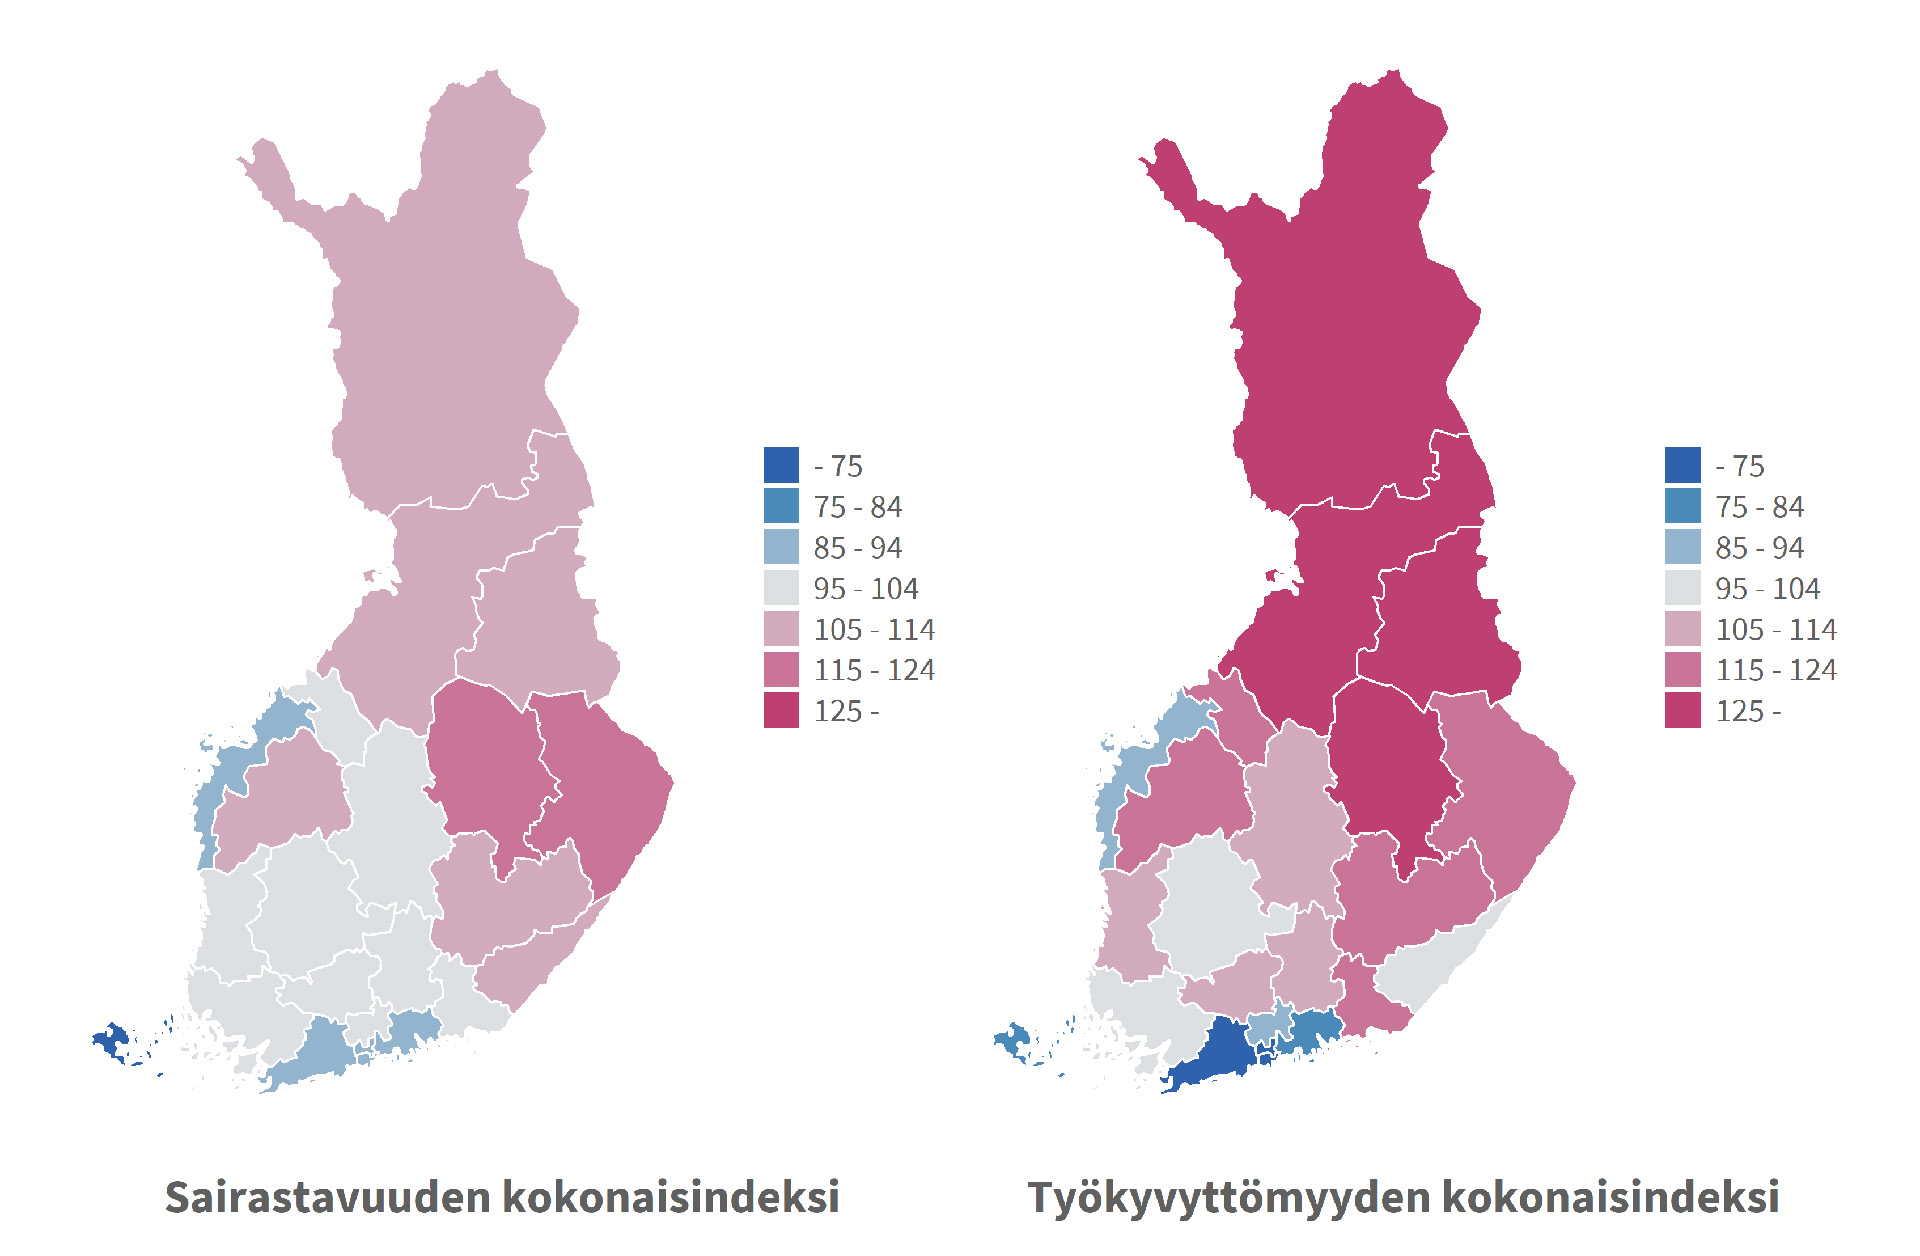 Hyvinvointialueiden erot sairastavuudessa ja työkyvyttömyydessä 2019–2021, ikävakioidut indeksit. Kuvasta näkee, että sairastavuus on yleisintä Pohjois- ja erityisesti Itä-Suomessa, ja että työkyvyttömyys on yleisintä Itä- ja erityisesti Pohjois-Suomessa.